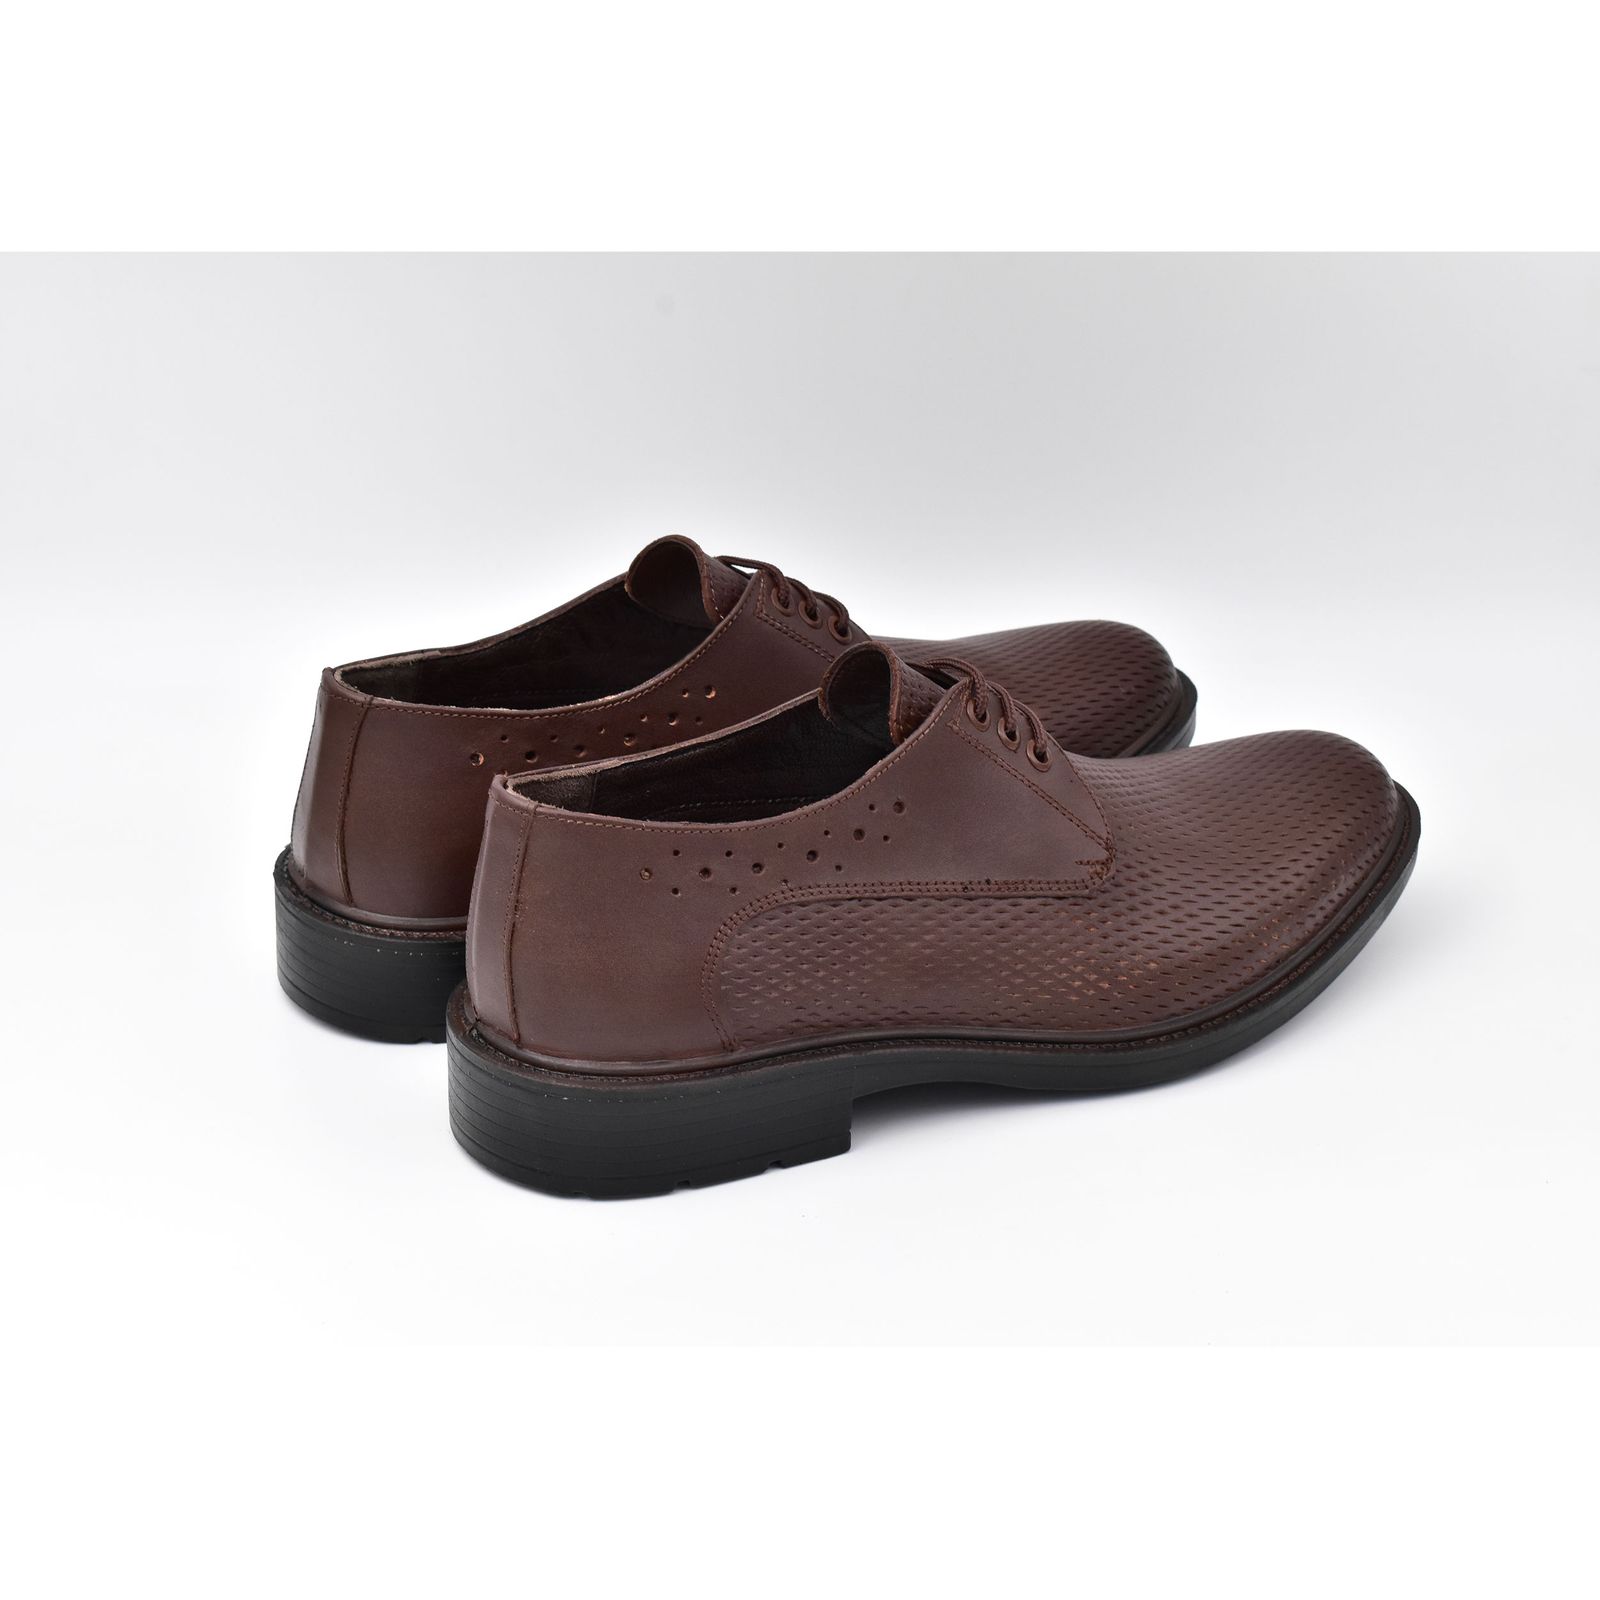 کفش مردانه پاما مدل Morano کد G1183 -  - 5